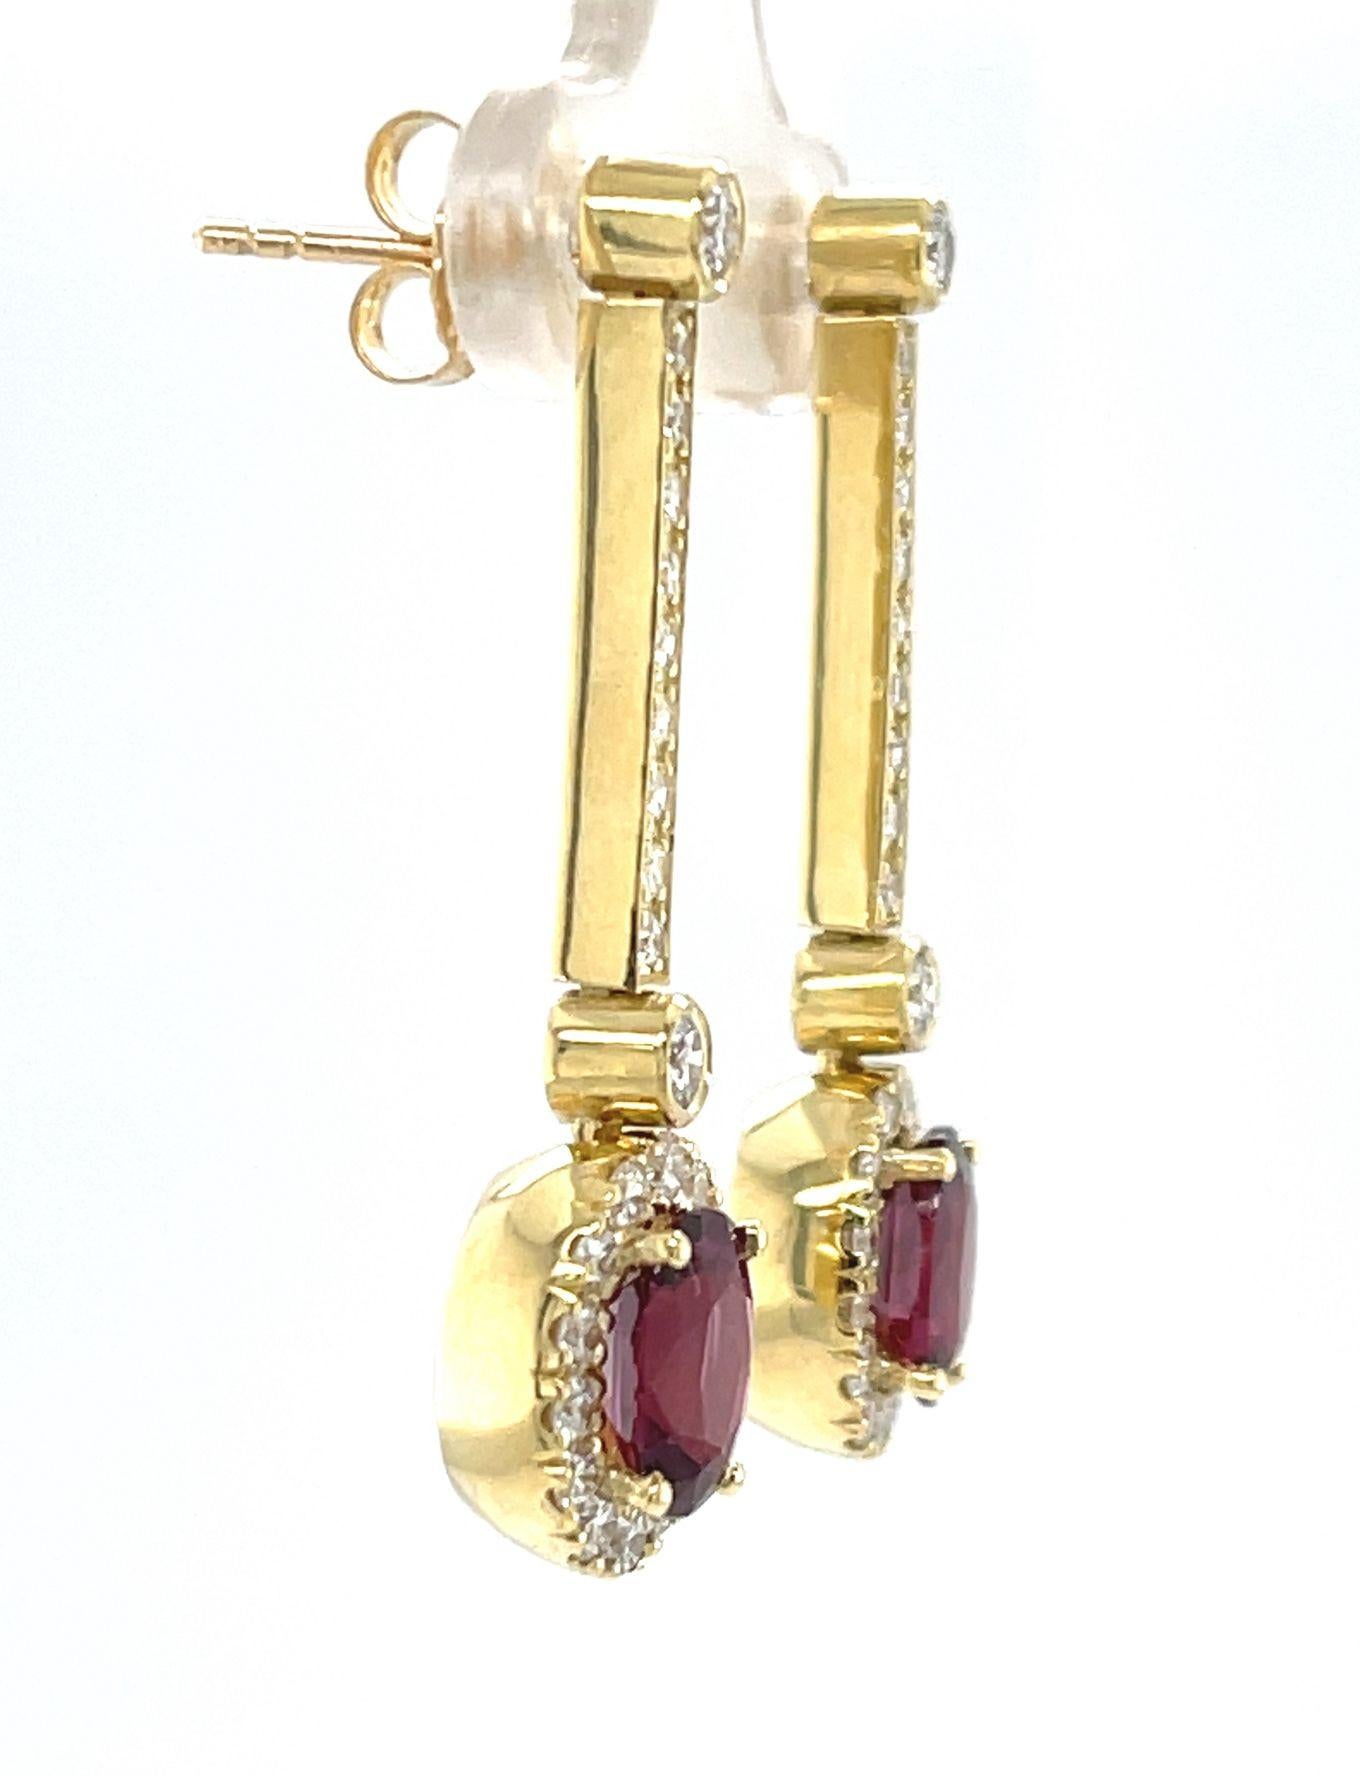 
Diese raffinierten und vielseitigen Ohrringe mit Rubin- und Diamanttropfen hängen an einer eleganten Linie aus funkelnden Diamanten! Die perfekt aufeinander abgestimmten ovalen Rubine sind von feiner Qualität und von außergewöhnlicher, leuchtend